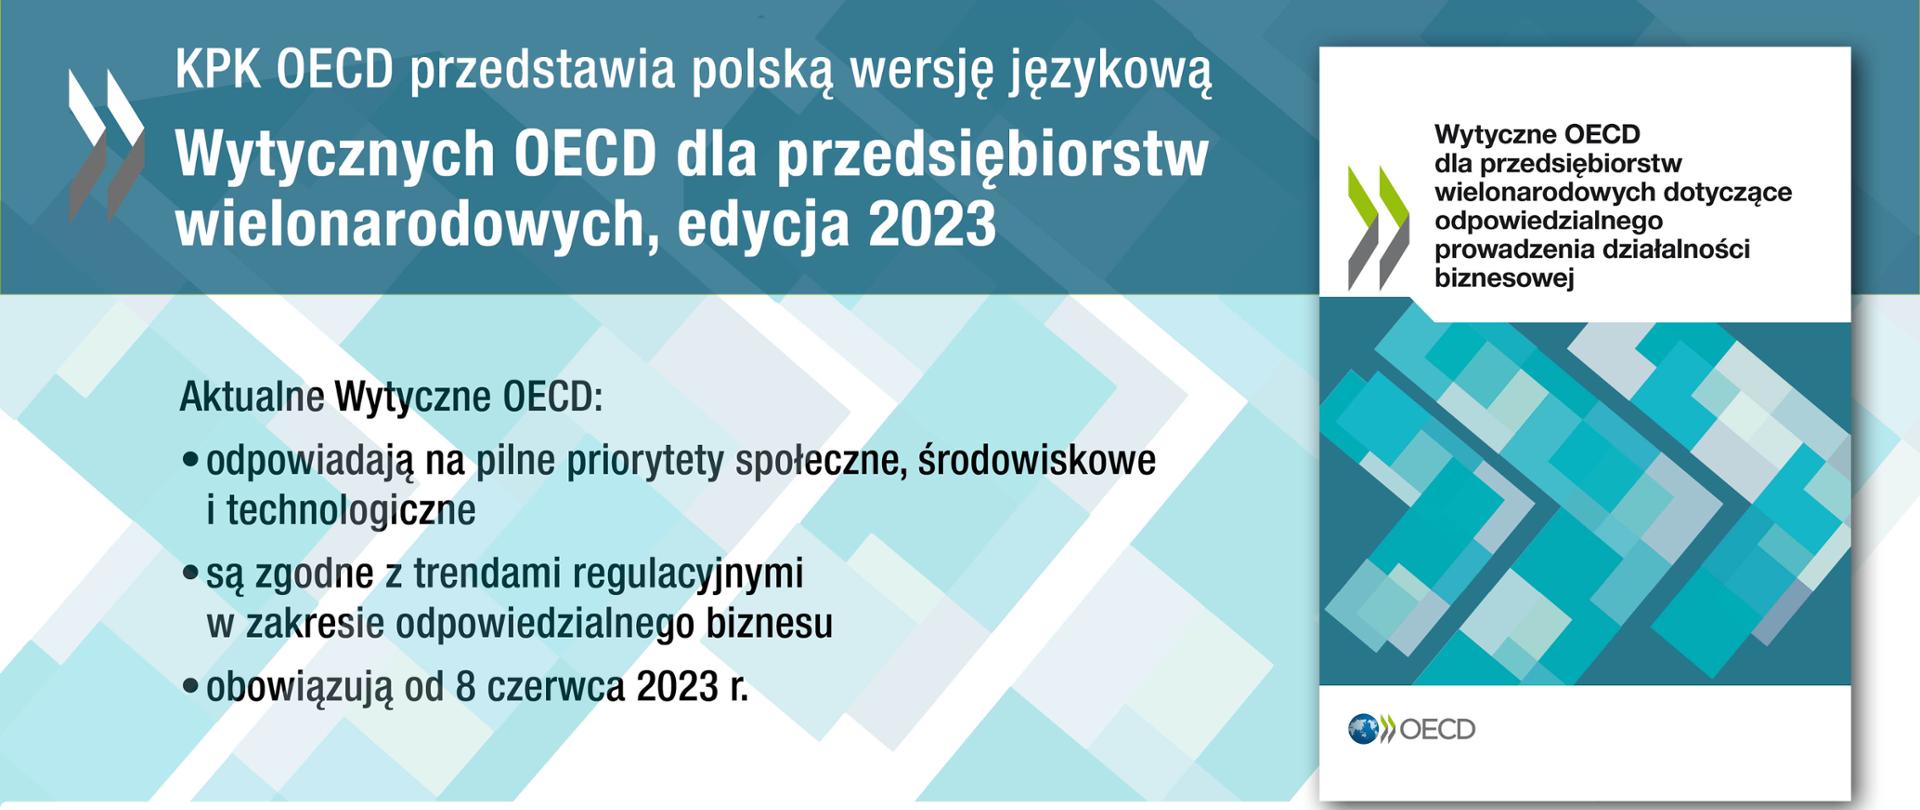 Promocja Polskiej wersji językowej - Wytyczne OECD, edycja 2023 